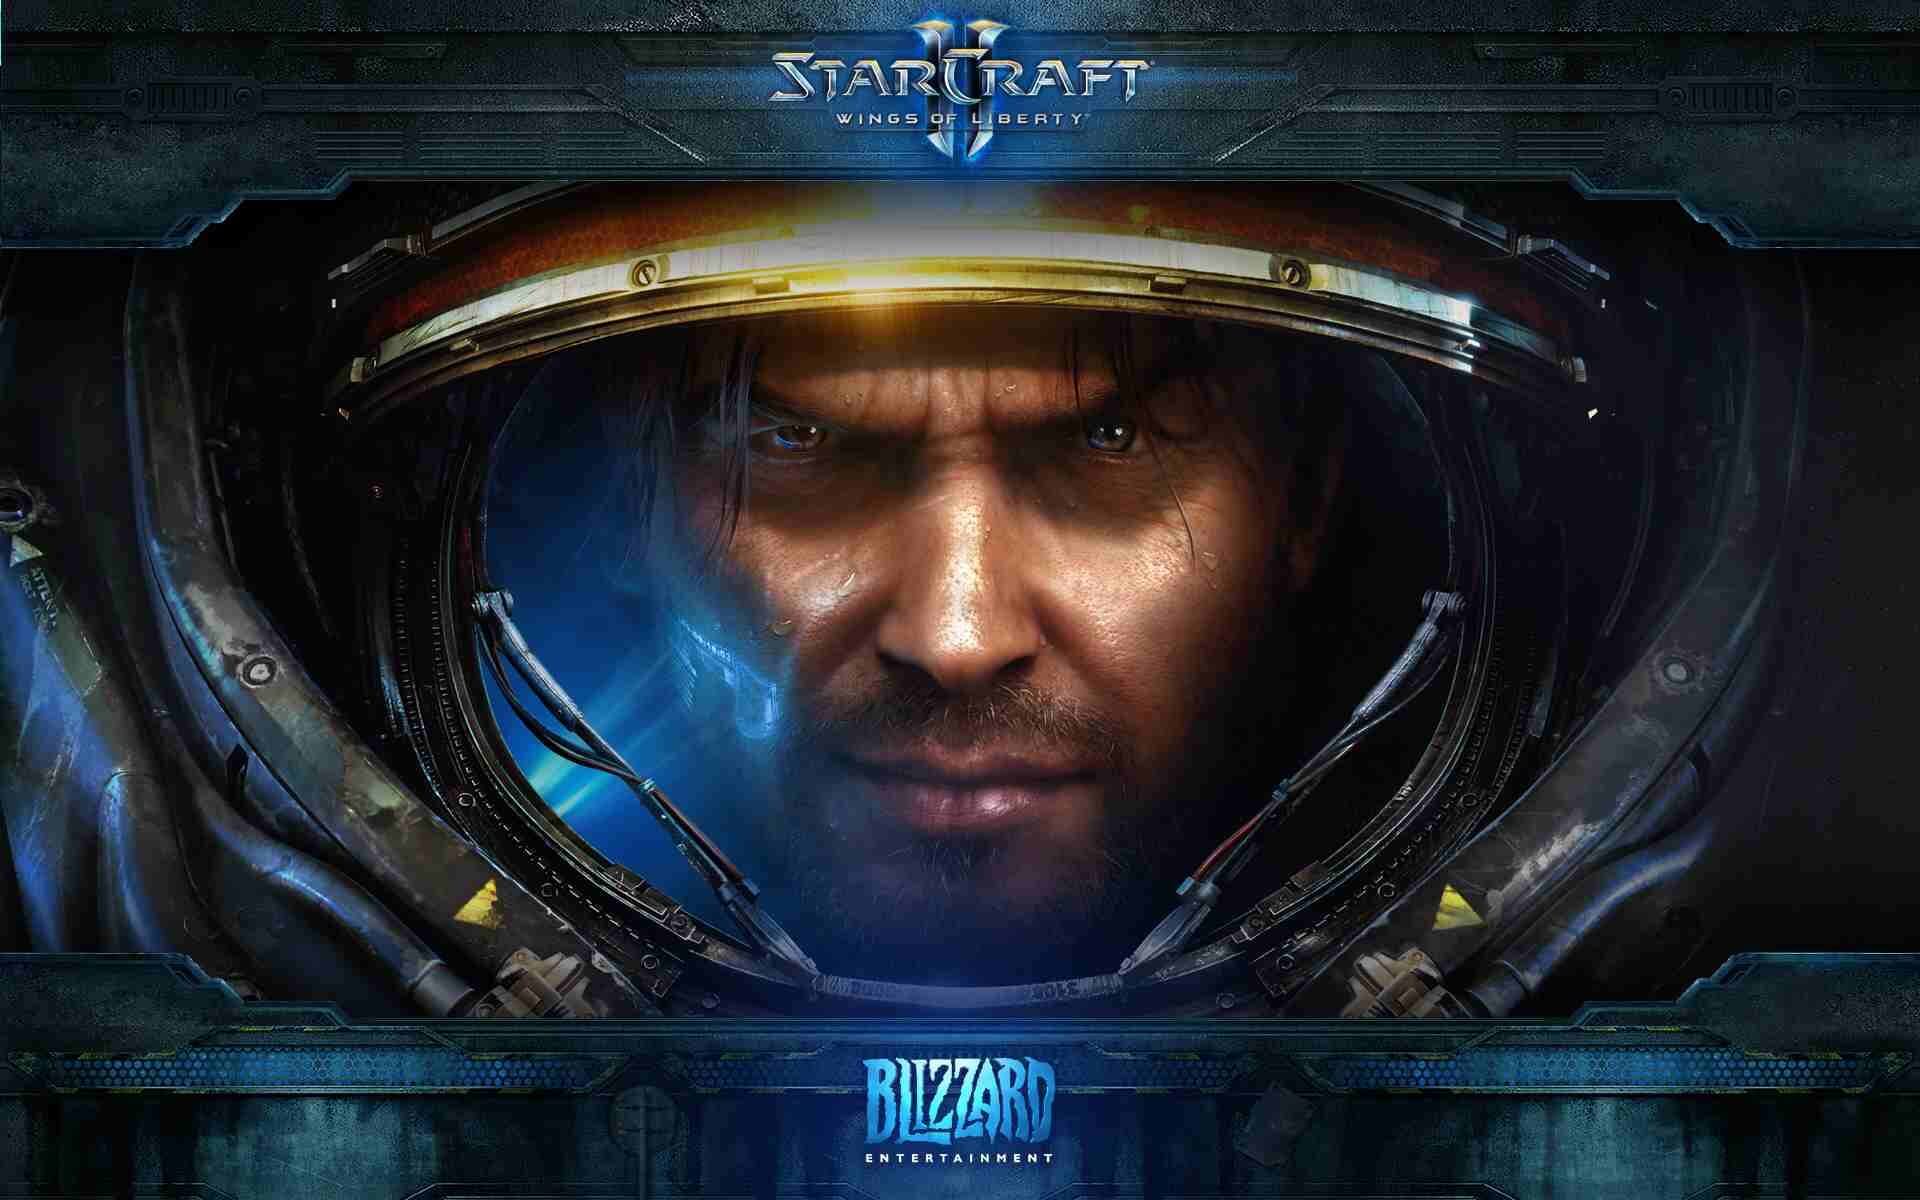 Giải mã về game Starcraft 2 là gì?